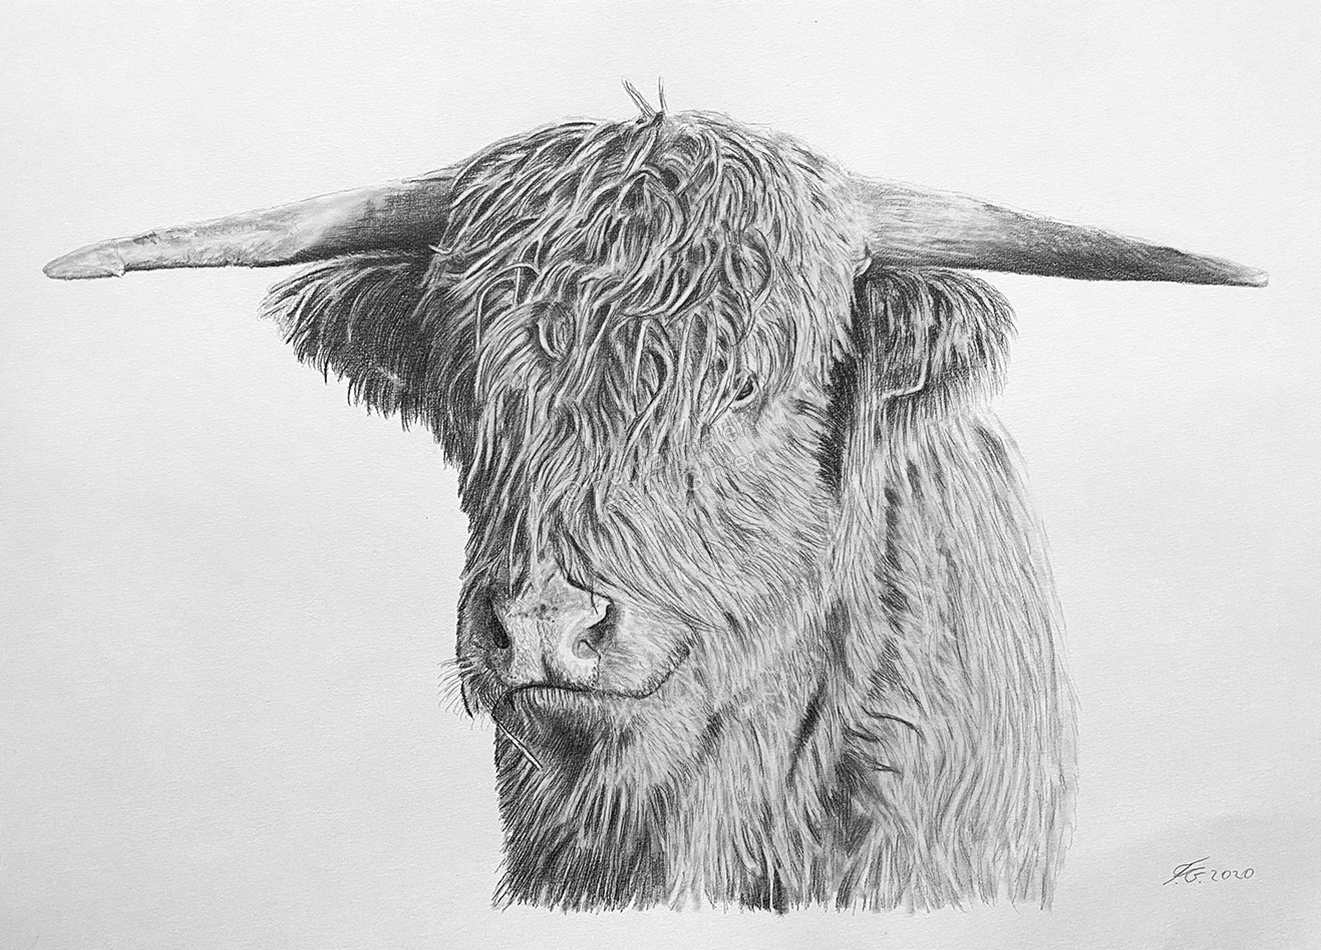 Ochsenportraits fotorealistisch gezeichnet – Tierzeichnungen eines Ochsen